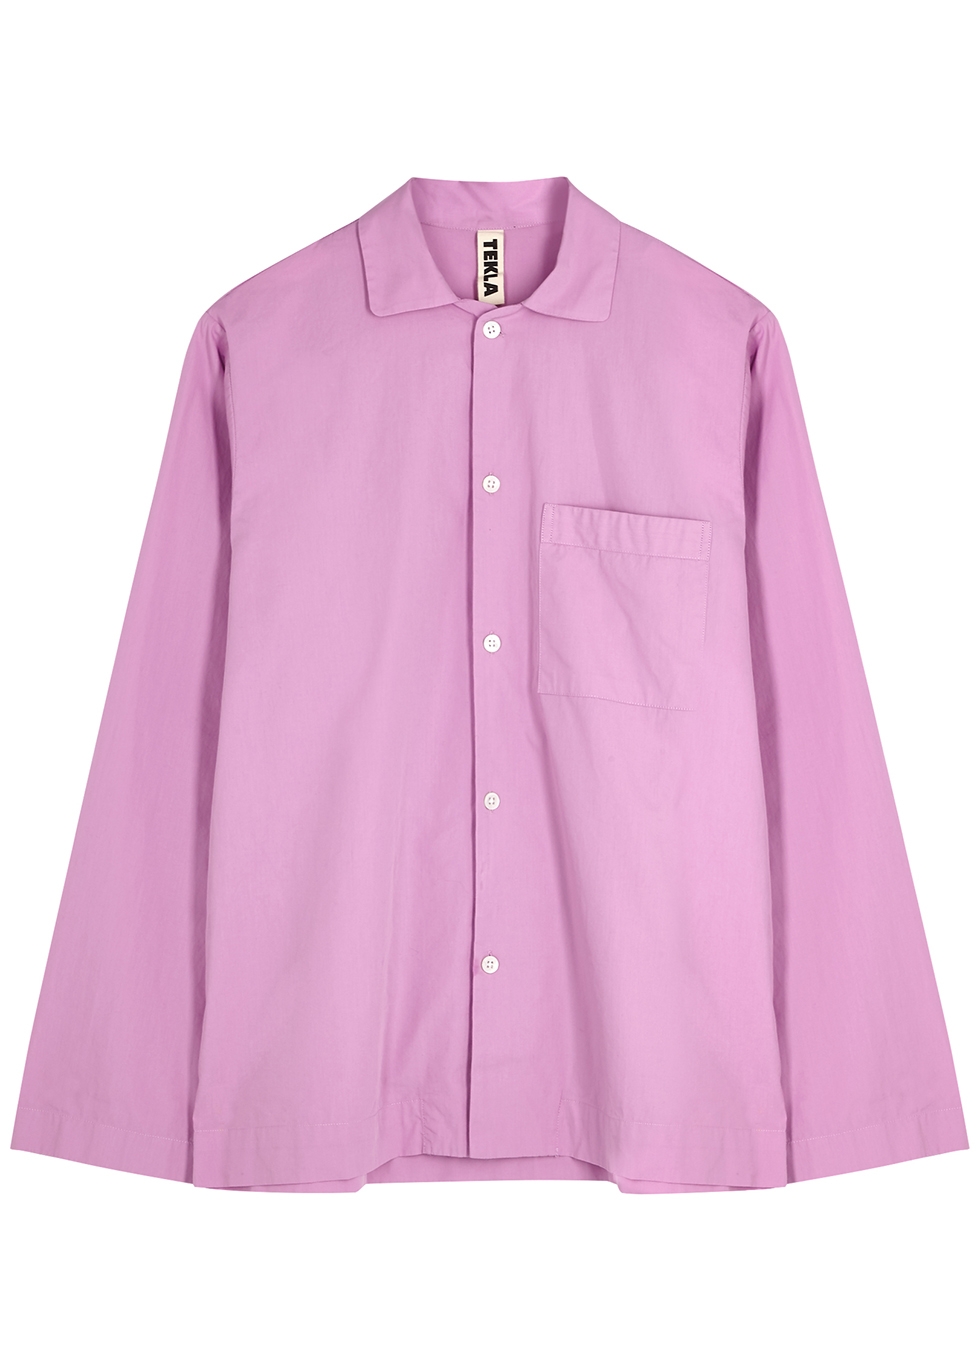 Tekla Unisex purple poplin pyjama trousers - Harvey Nichols